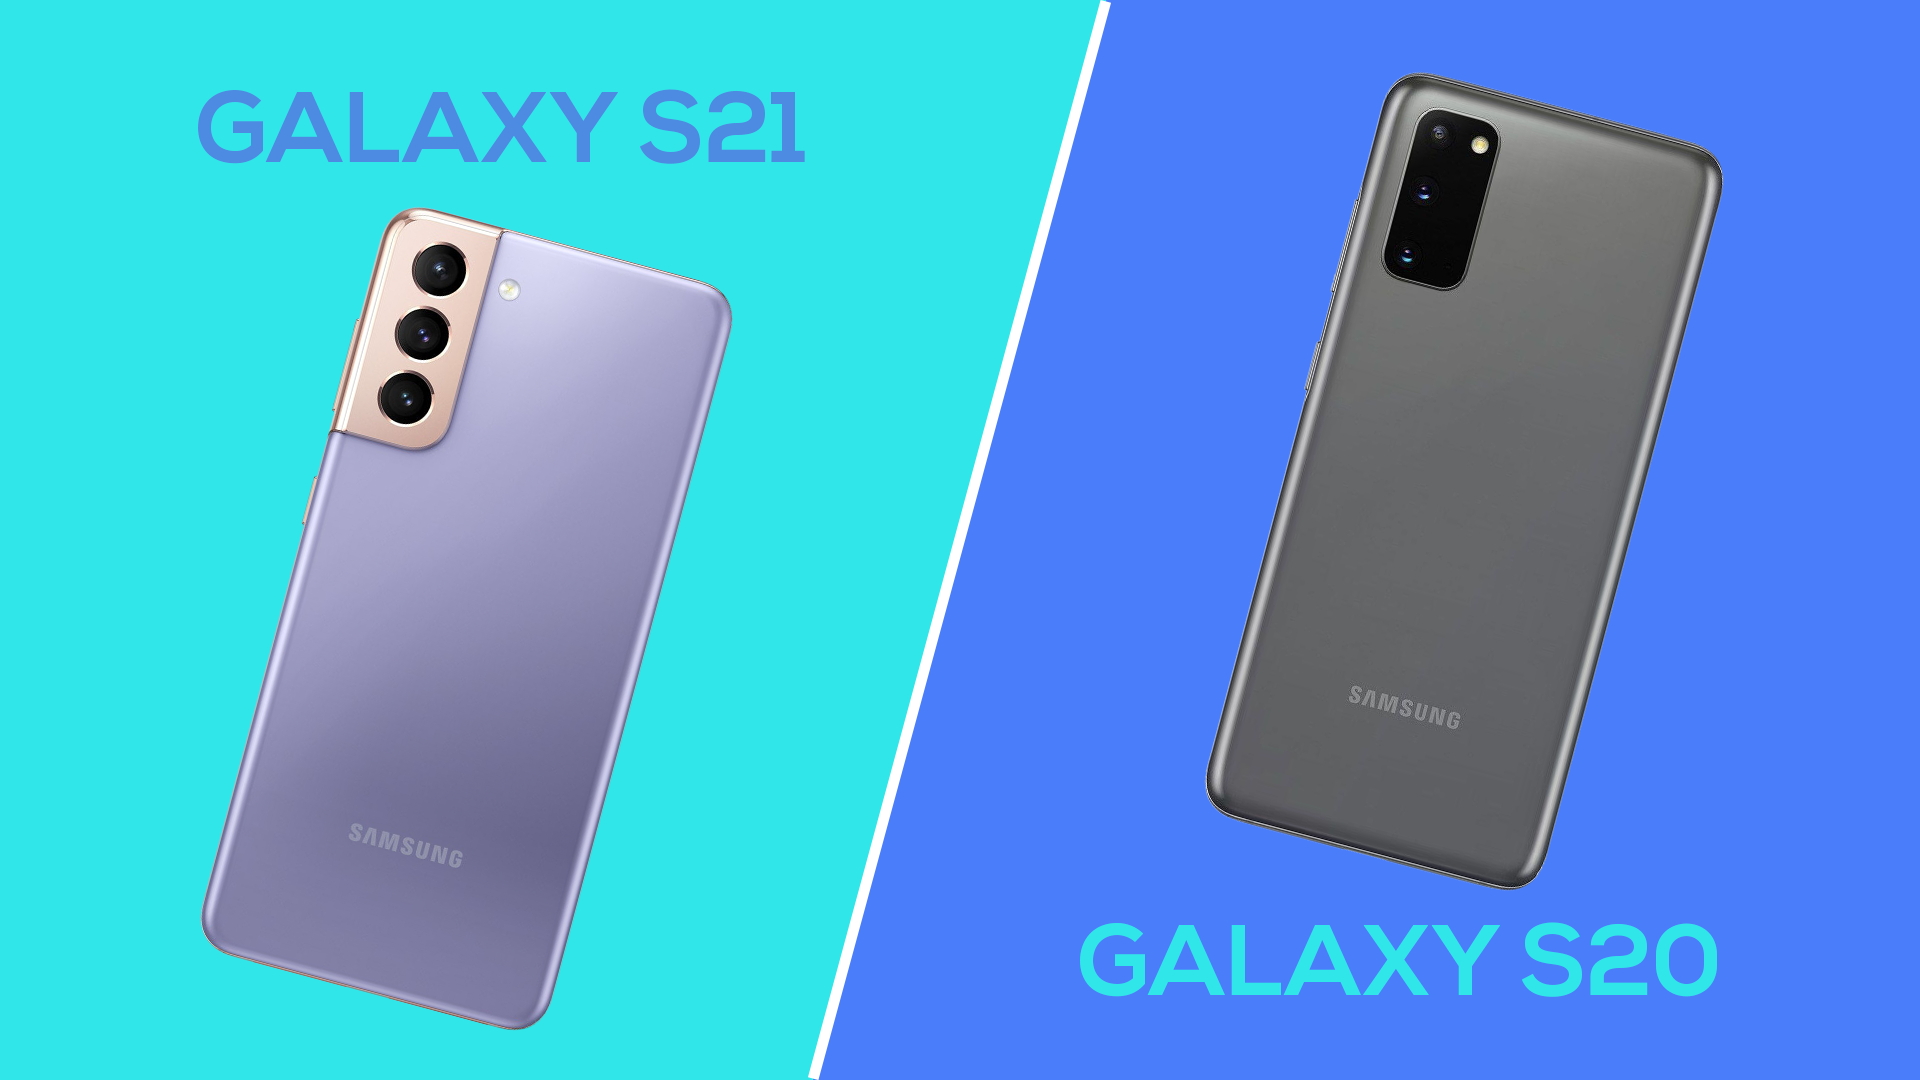 Galaxy S: confira o Galaxy S20, S21 e mais